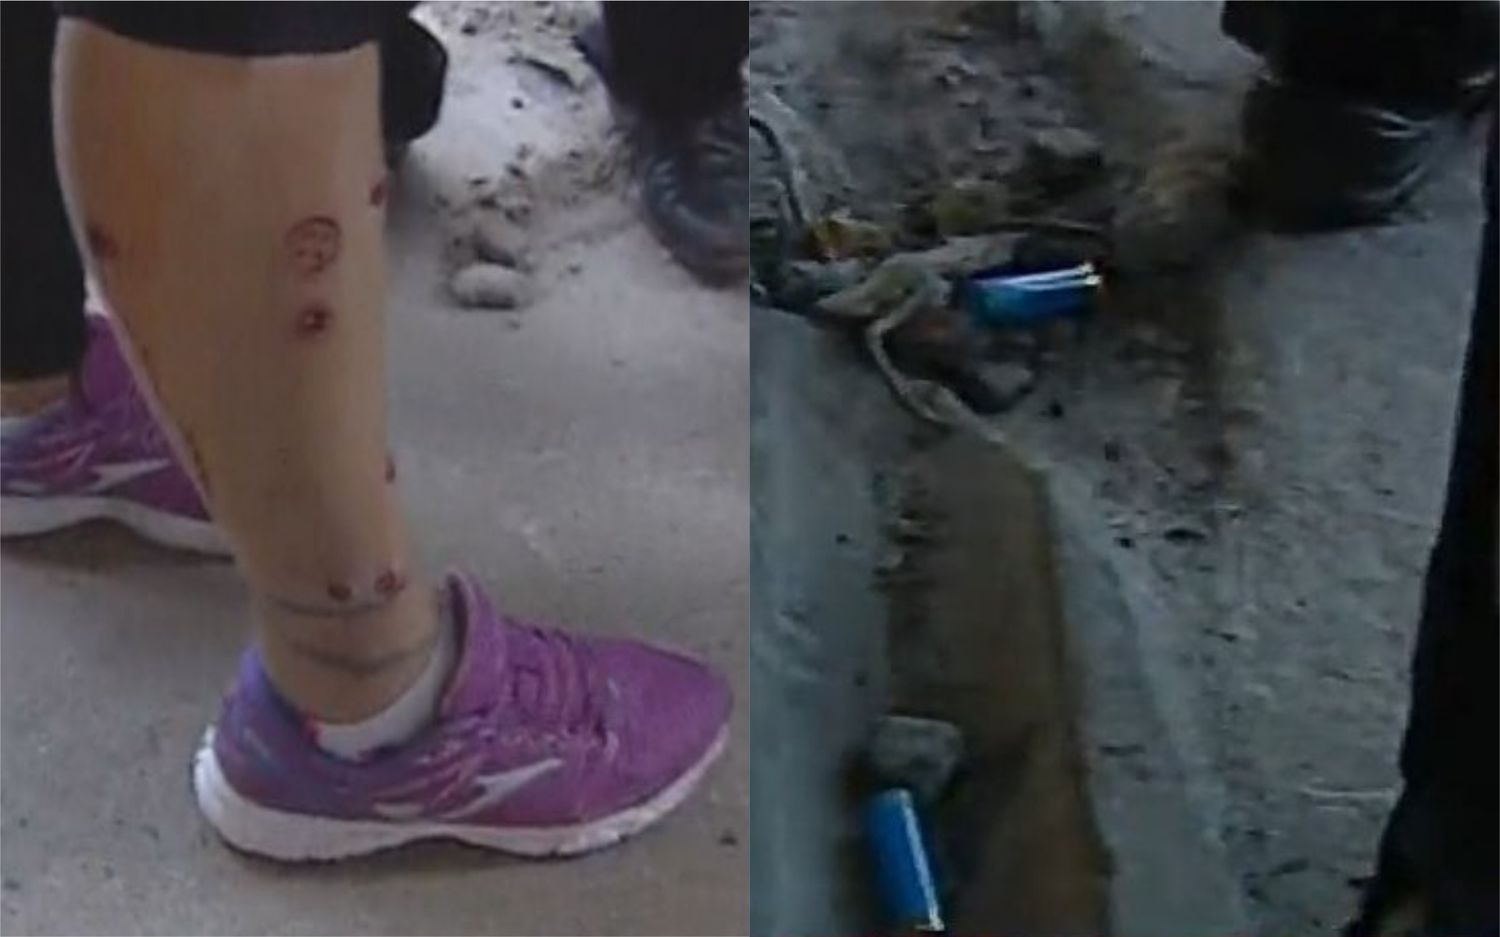 #ParoNacional: Represión en el corte de Puente Pueyrredón con balas de goma y heridos